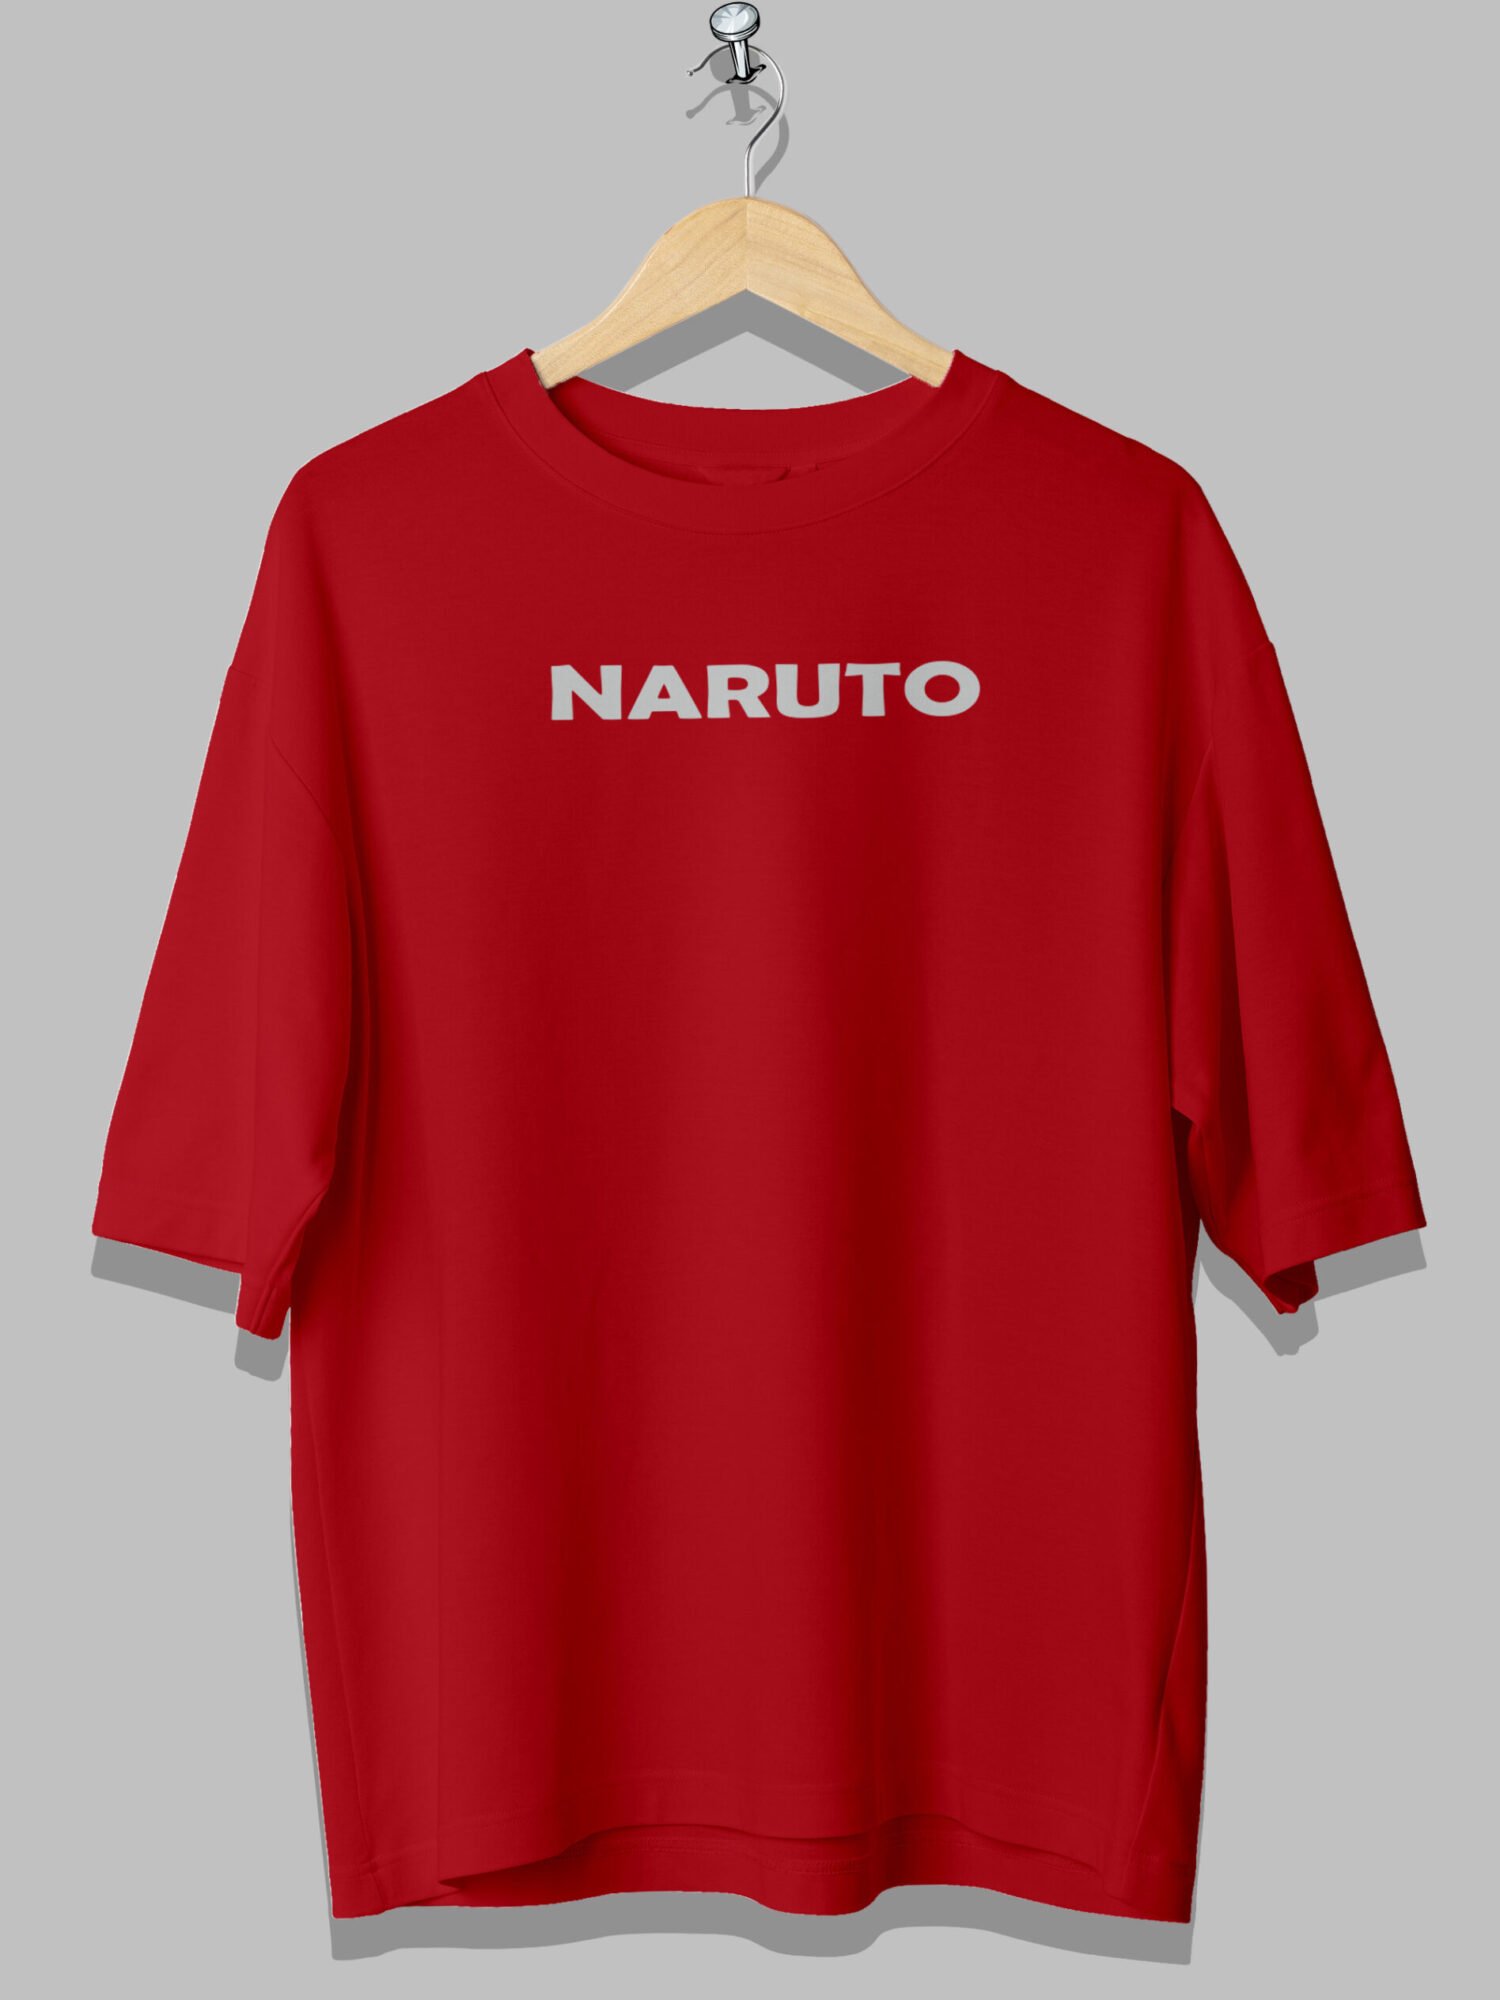 Naruto Both Side Printed Anime Oversized Tshirt